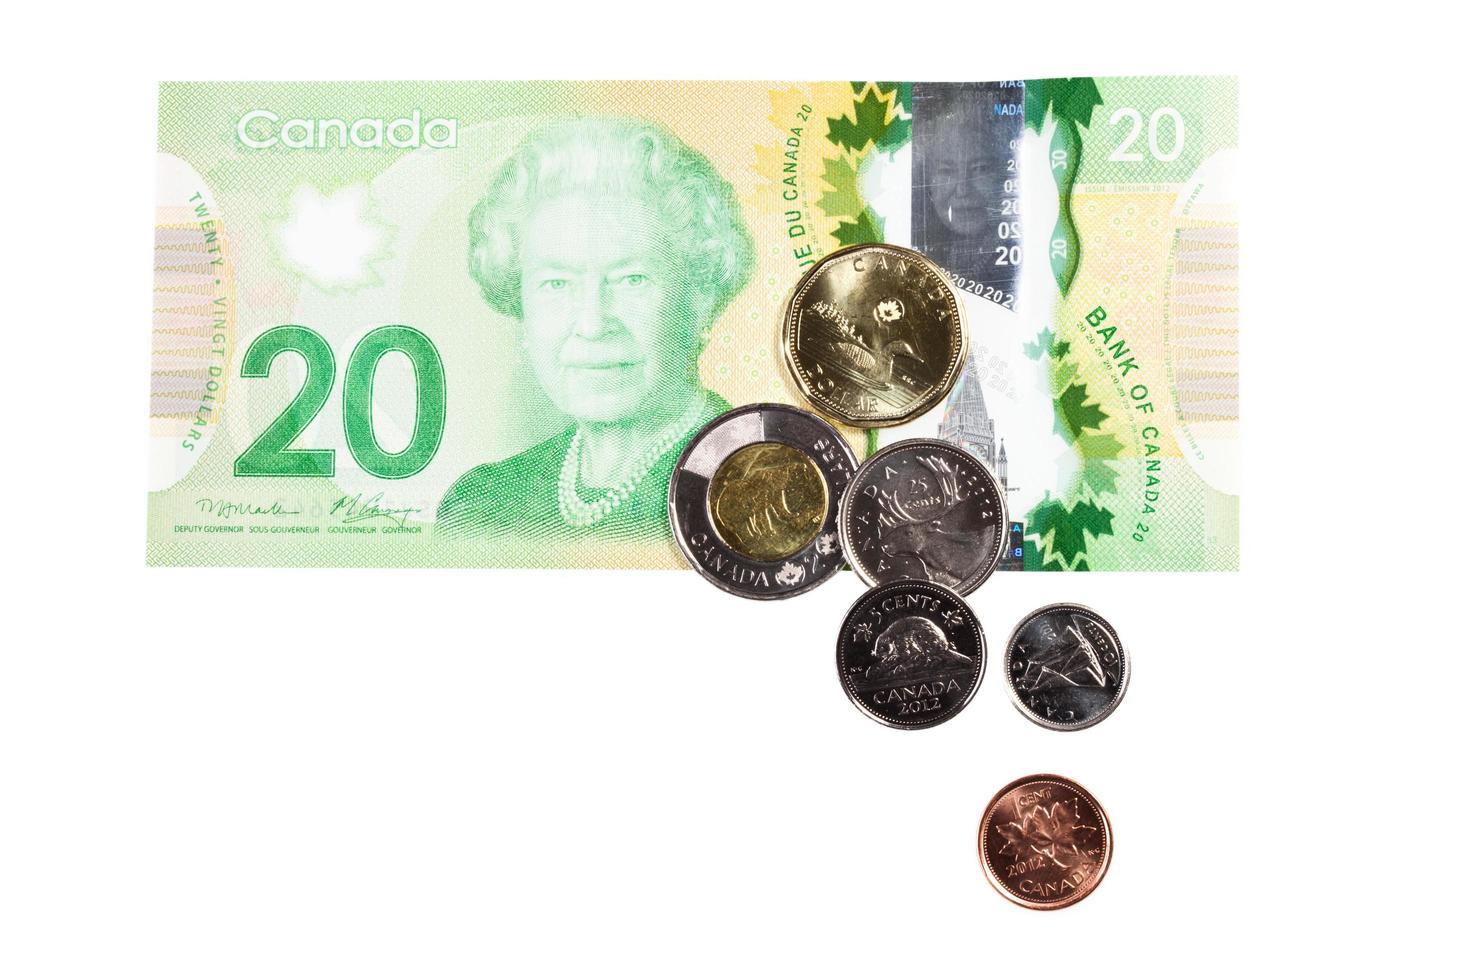 Ottawa, Kanada, 13. April 2013, das gesamte kanadische Geld isoliert auf weiß foto